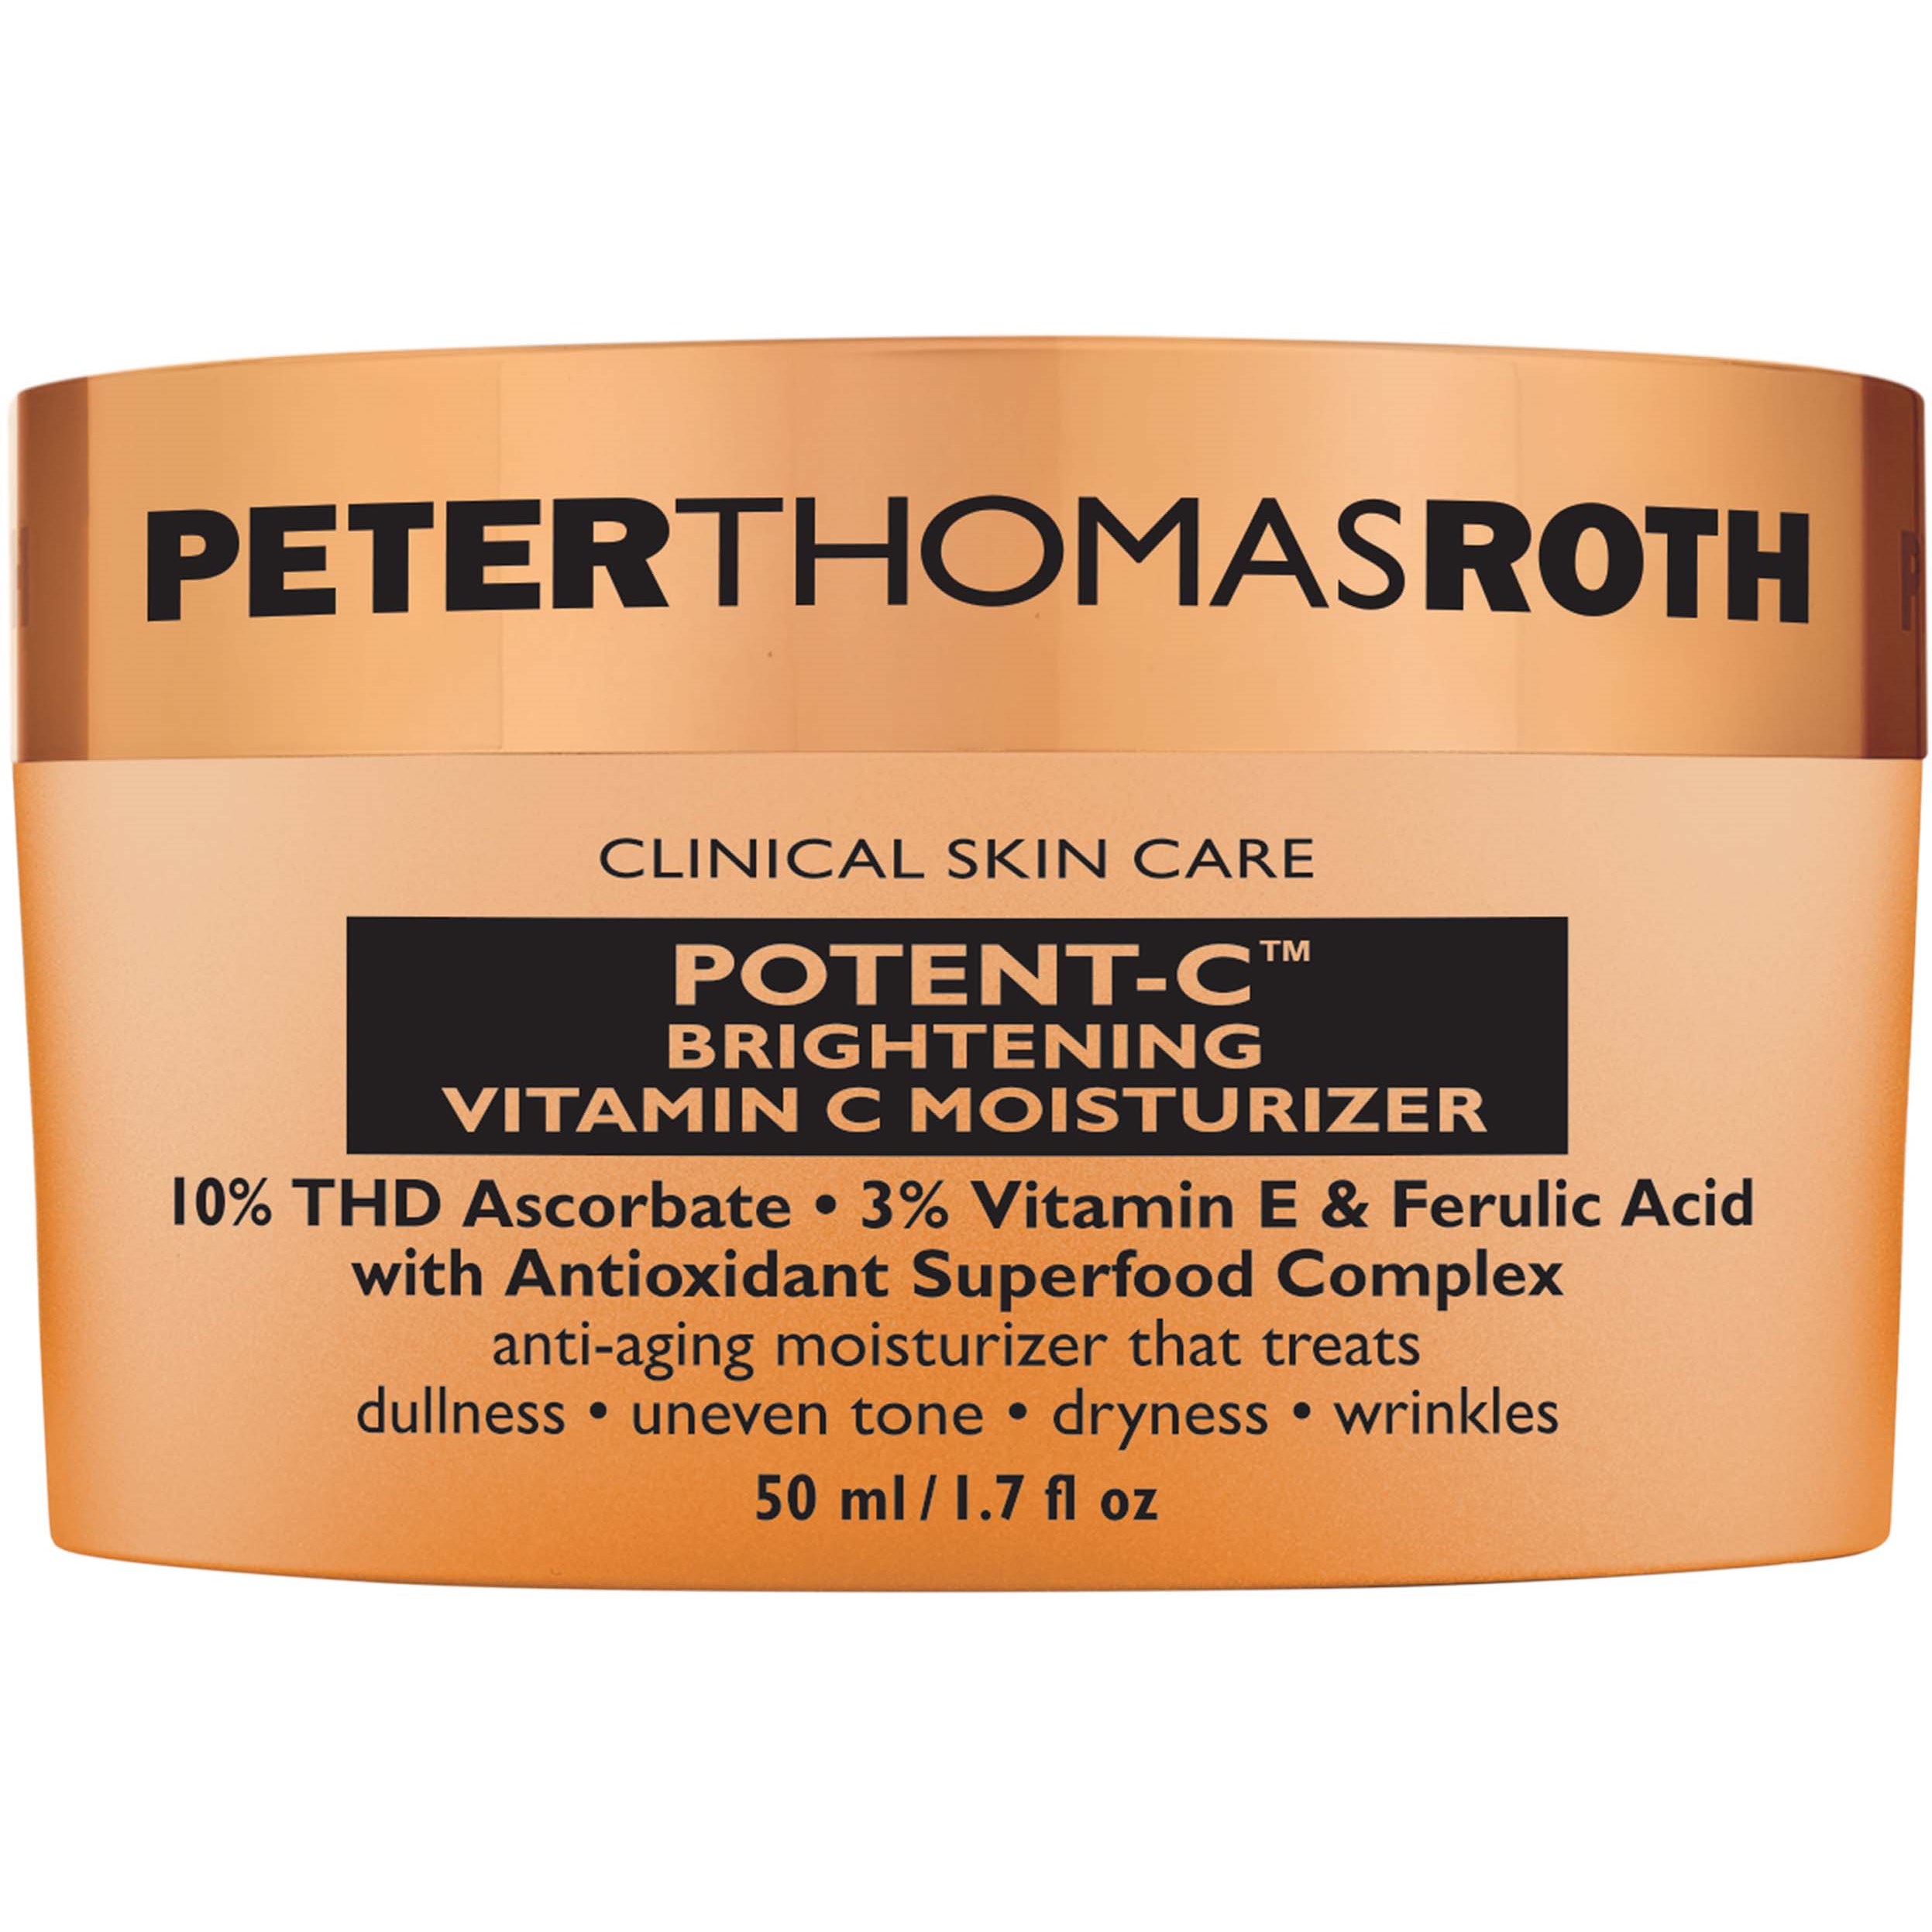 Läs mer om Peter Thomas Roth Potent-C™ Brightening Vitamin C Moisturizer 50 ml